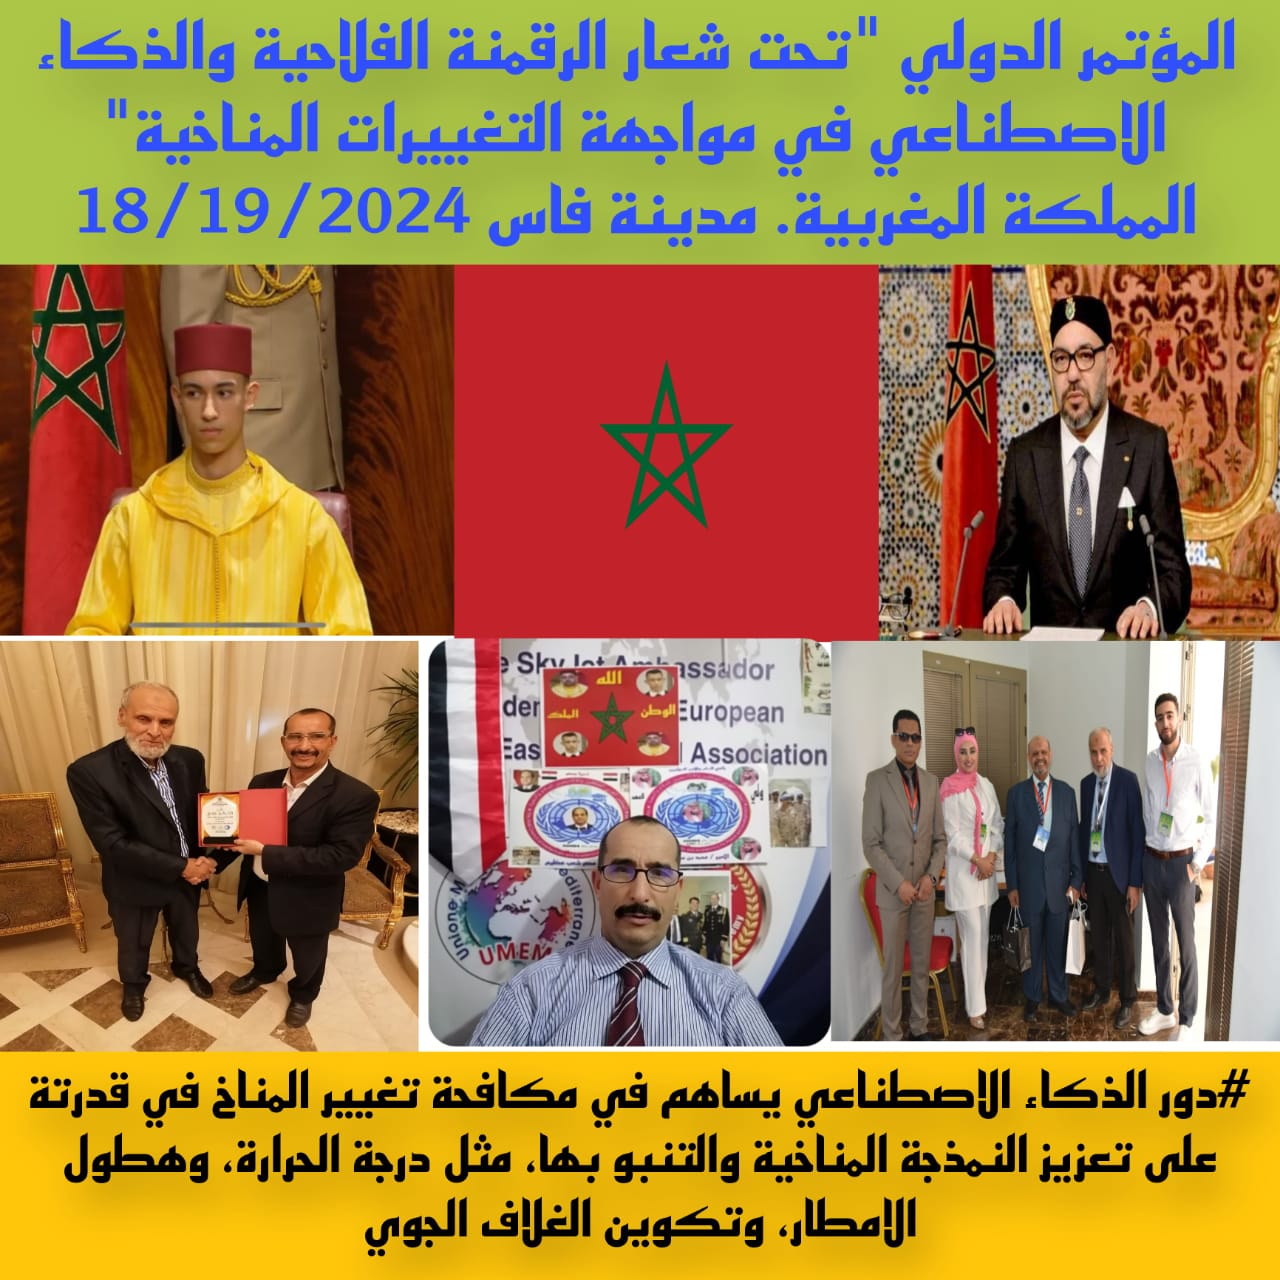 المجلس العربى للمثقفين والأكاديميين للسلام والتنمية يدعم مؤتمر الرقمنة فى المغرب 